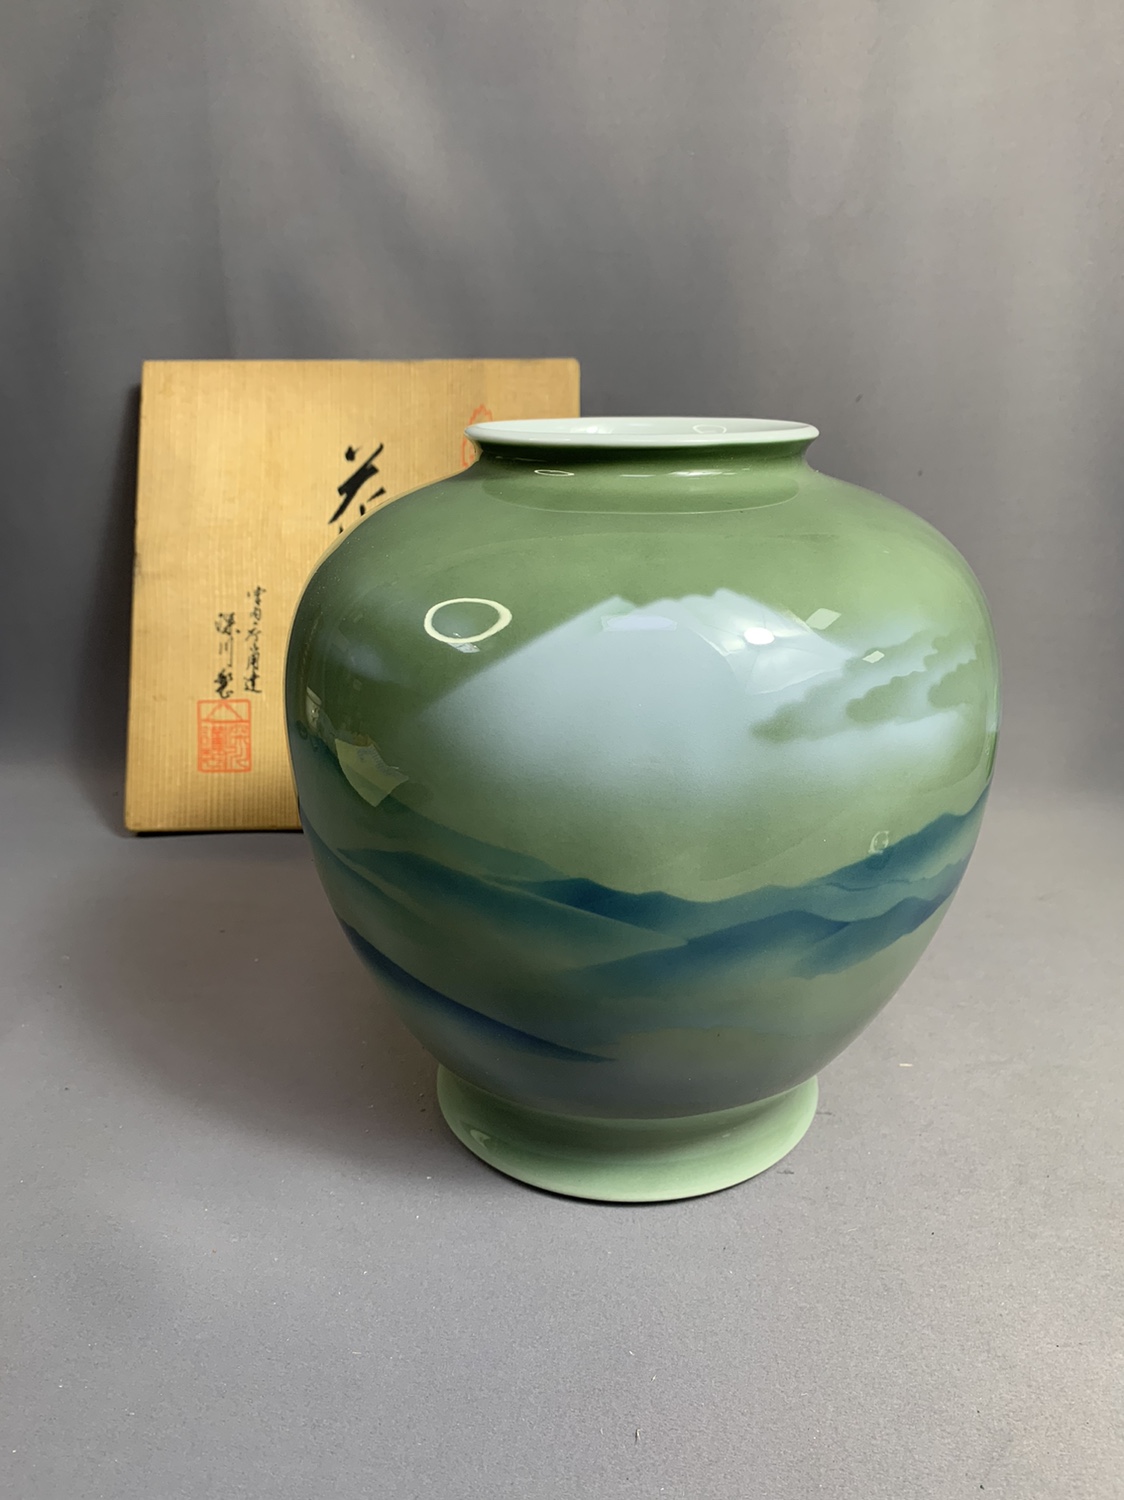 日本进口瓷器深川制花瓶富士山图居家摆件